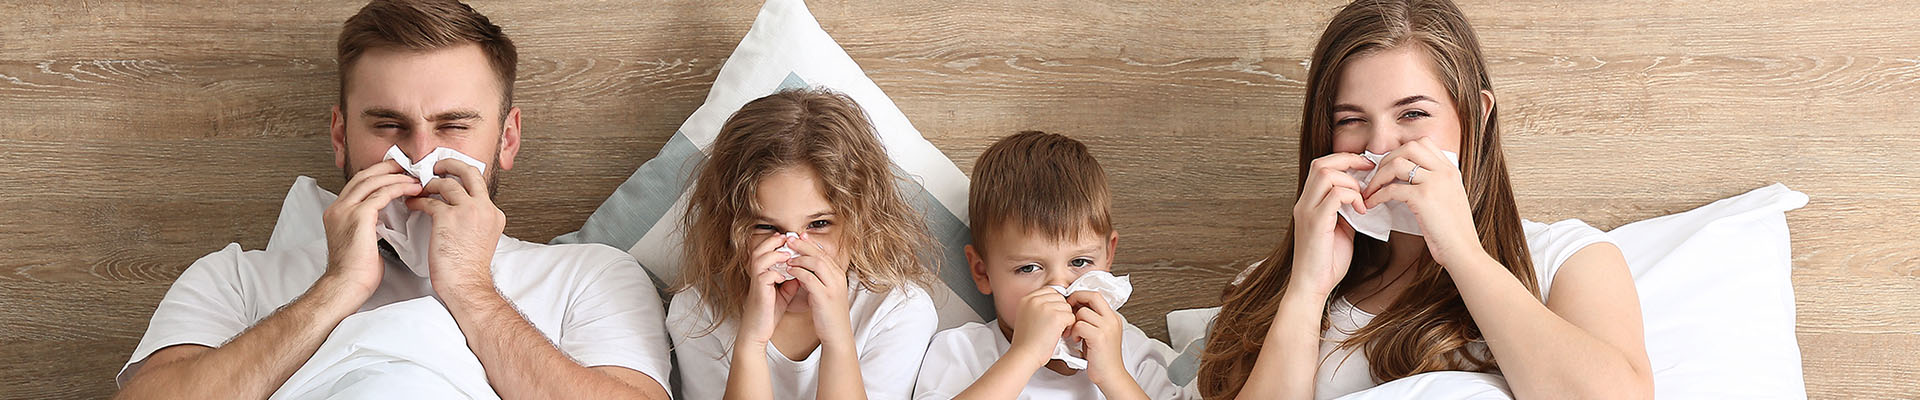 Wat kan je op een natuurlijke manier doen tegen een verkoudheid?